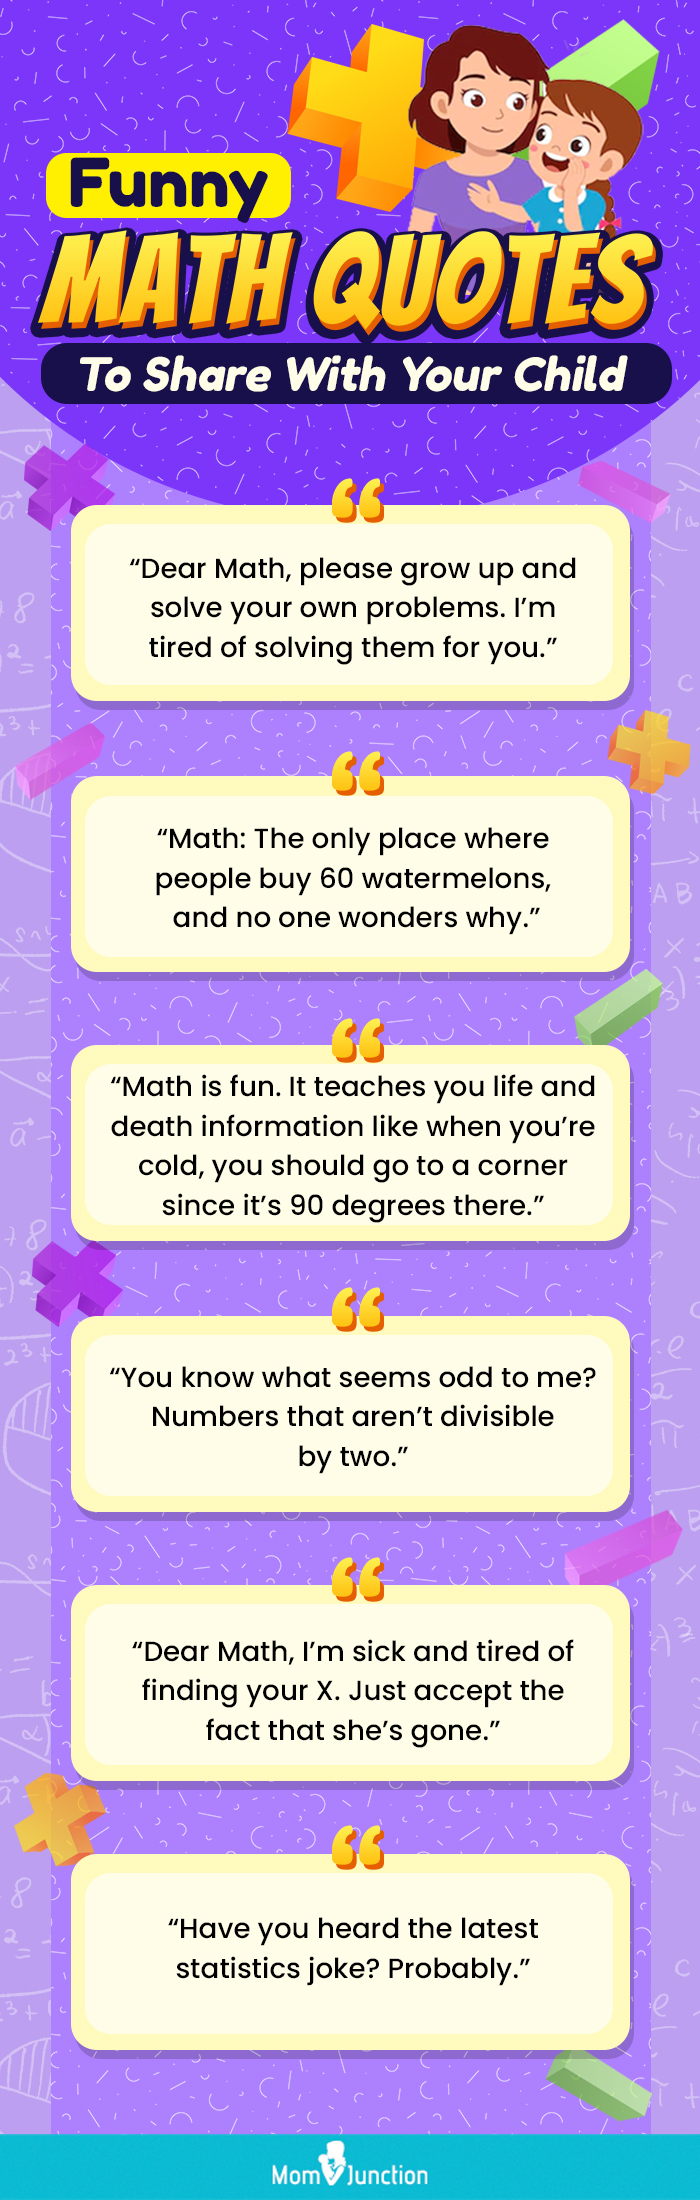 rene descartes quotes on math